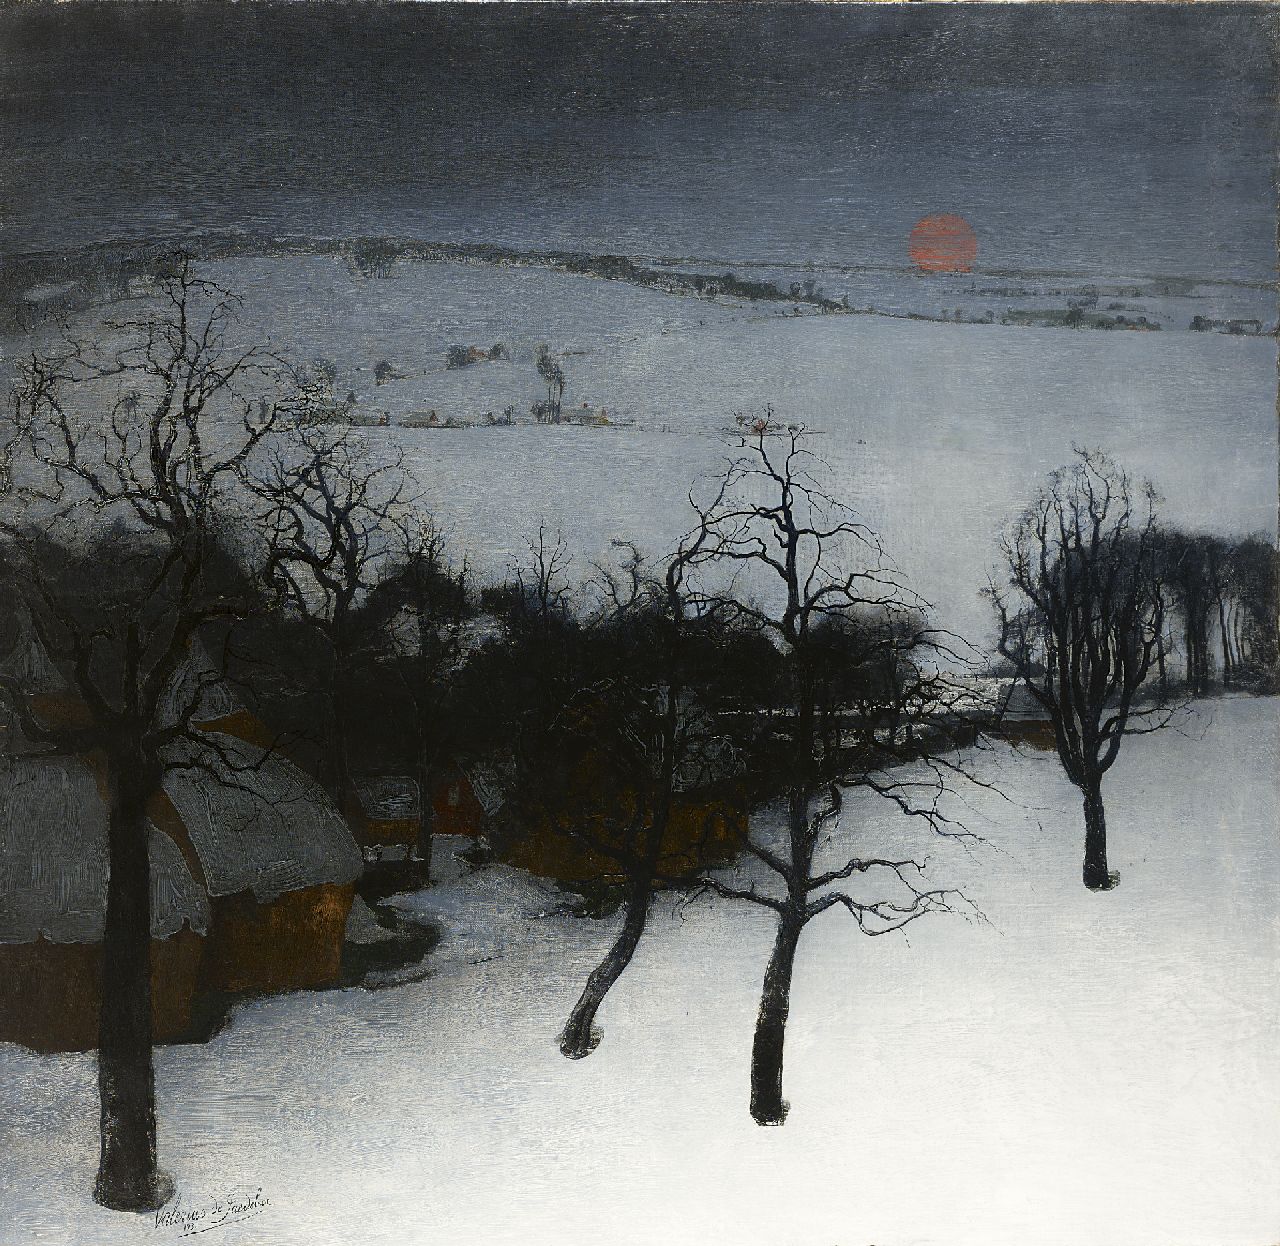 Saedeleer V. de | Valerius de Saedeleer, A winter landscape, Öl auf Leinwand 126,0 x 131,0 cm, signed l.l. und dated 1931